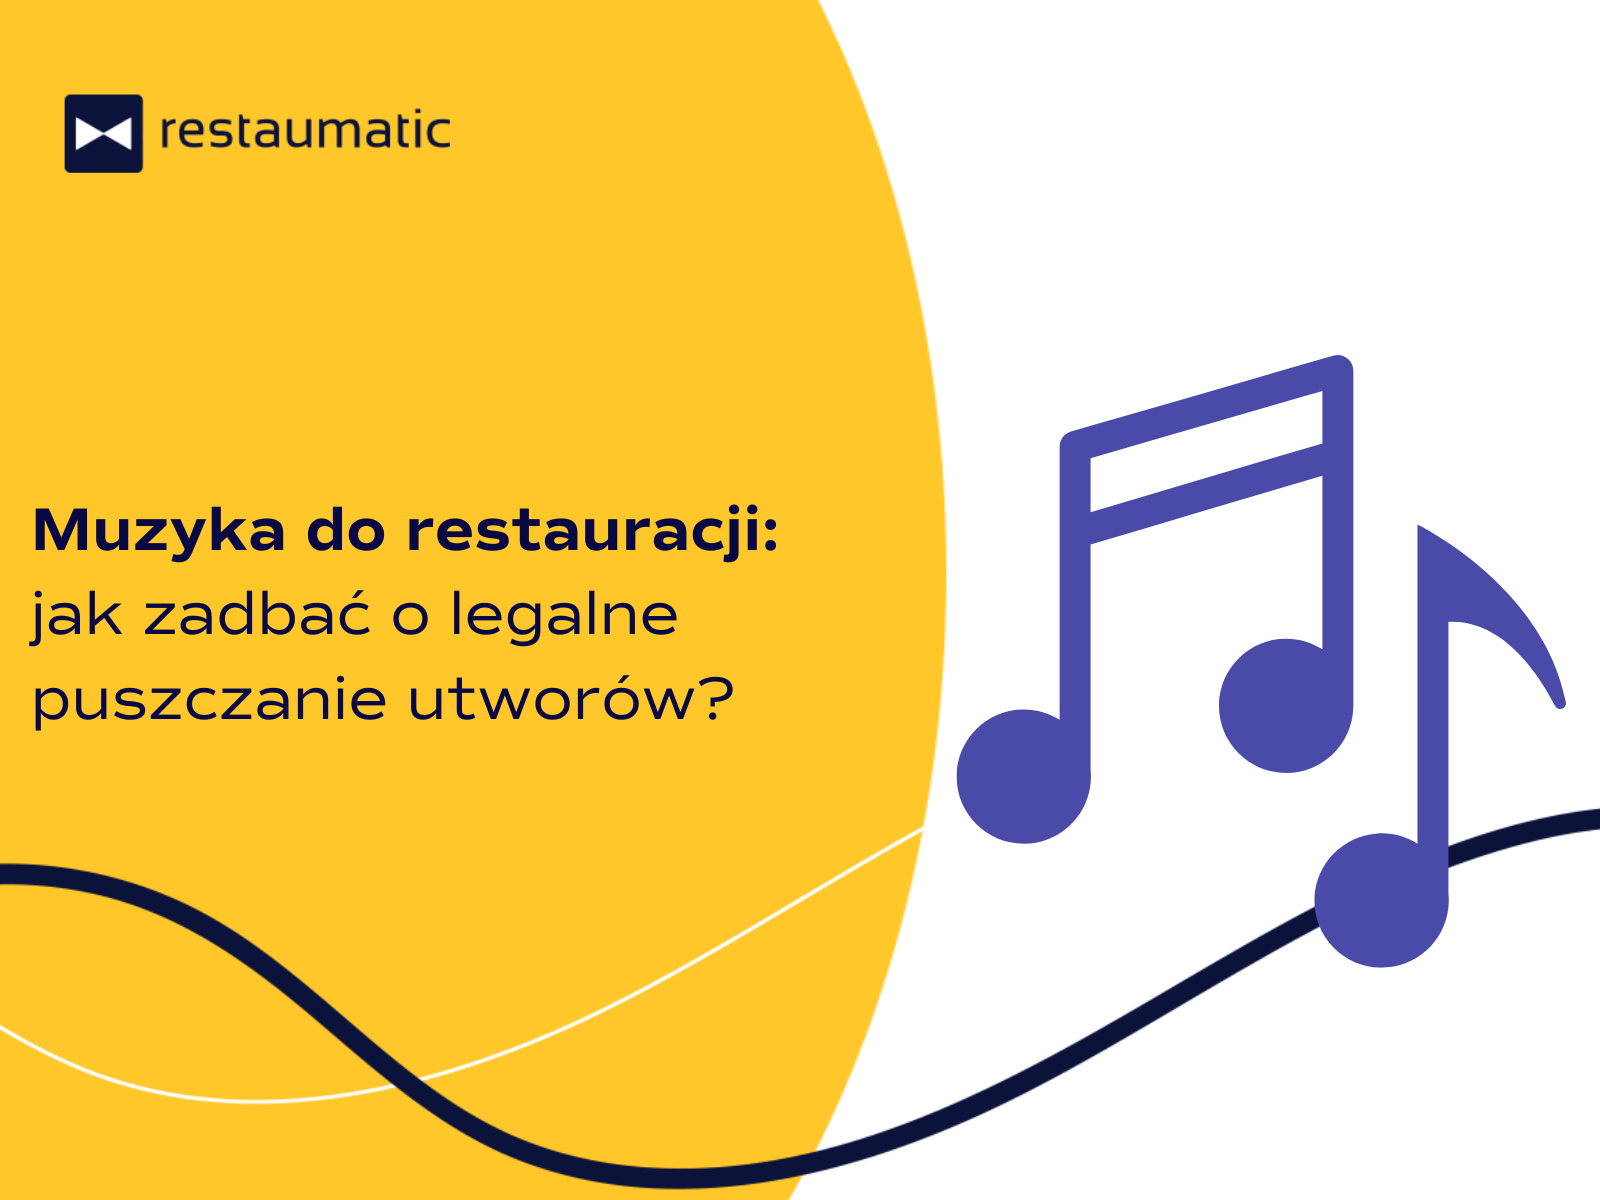 Muzyka do restauracji: jak zadbać o legalne puszczanie utworów?